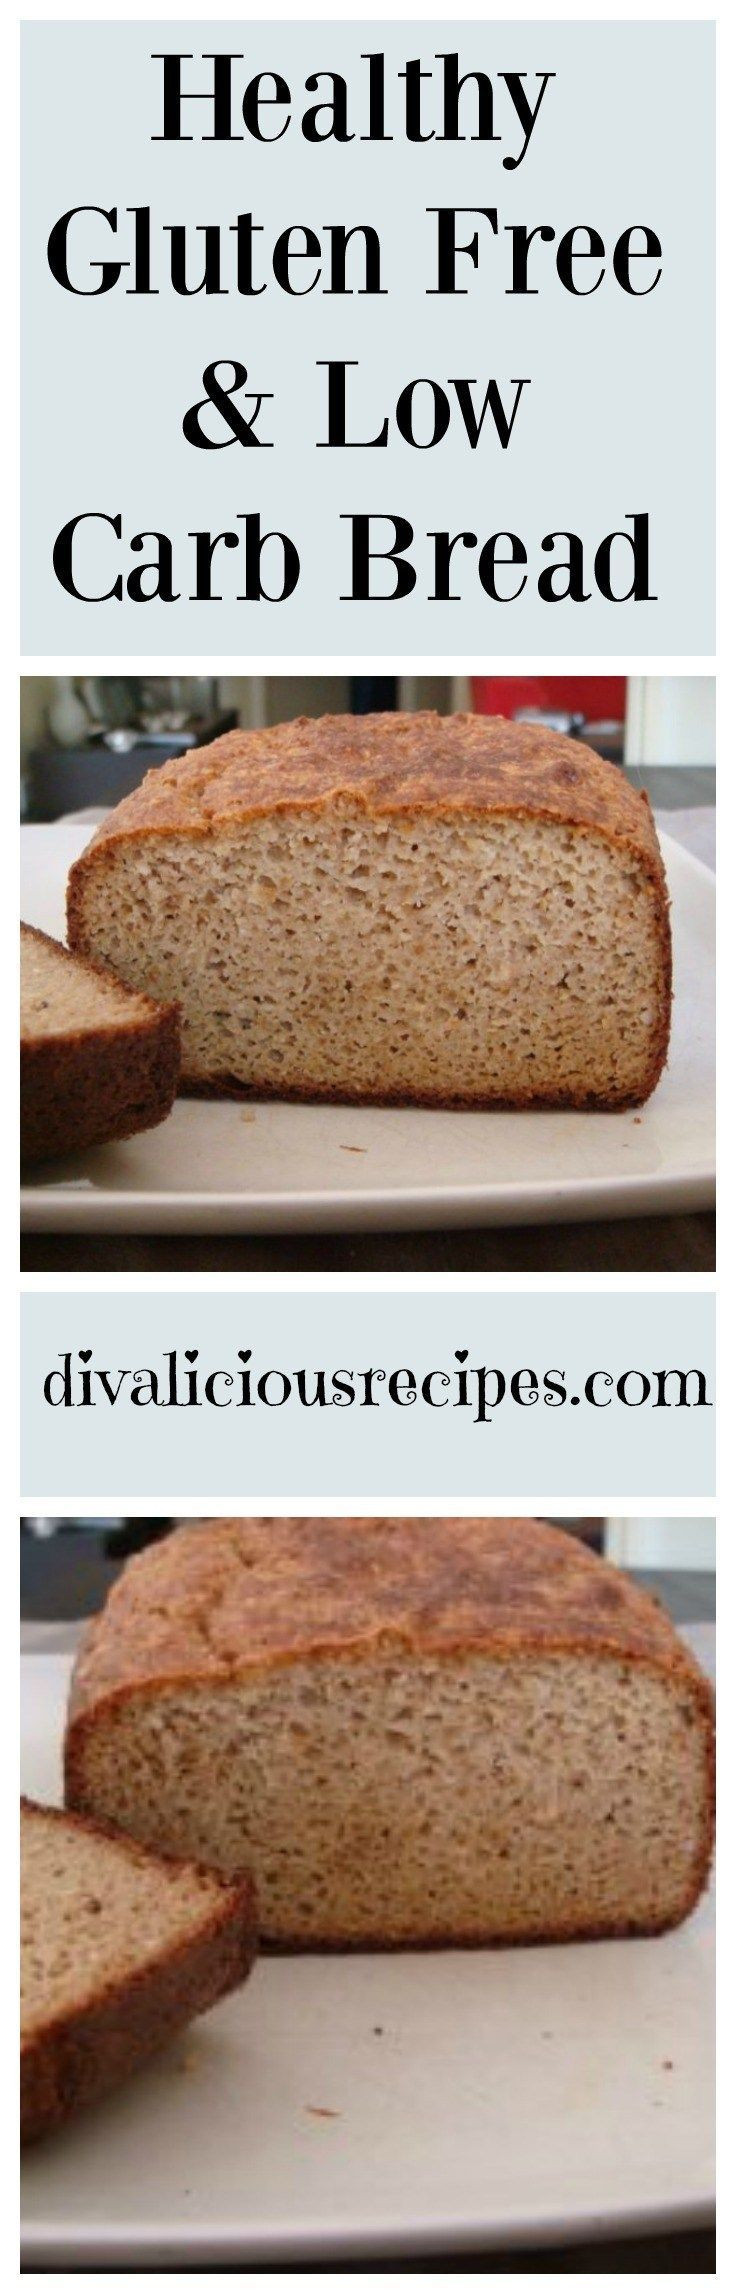 Low Carb Bread Recipes Healthy
 Healthy Gluten Free & Low Carb Bread Recipe